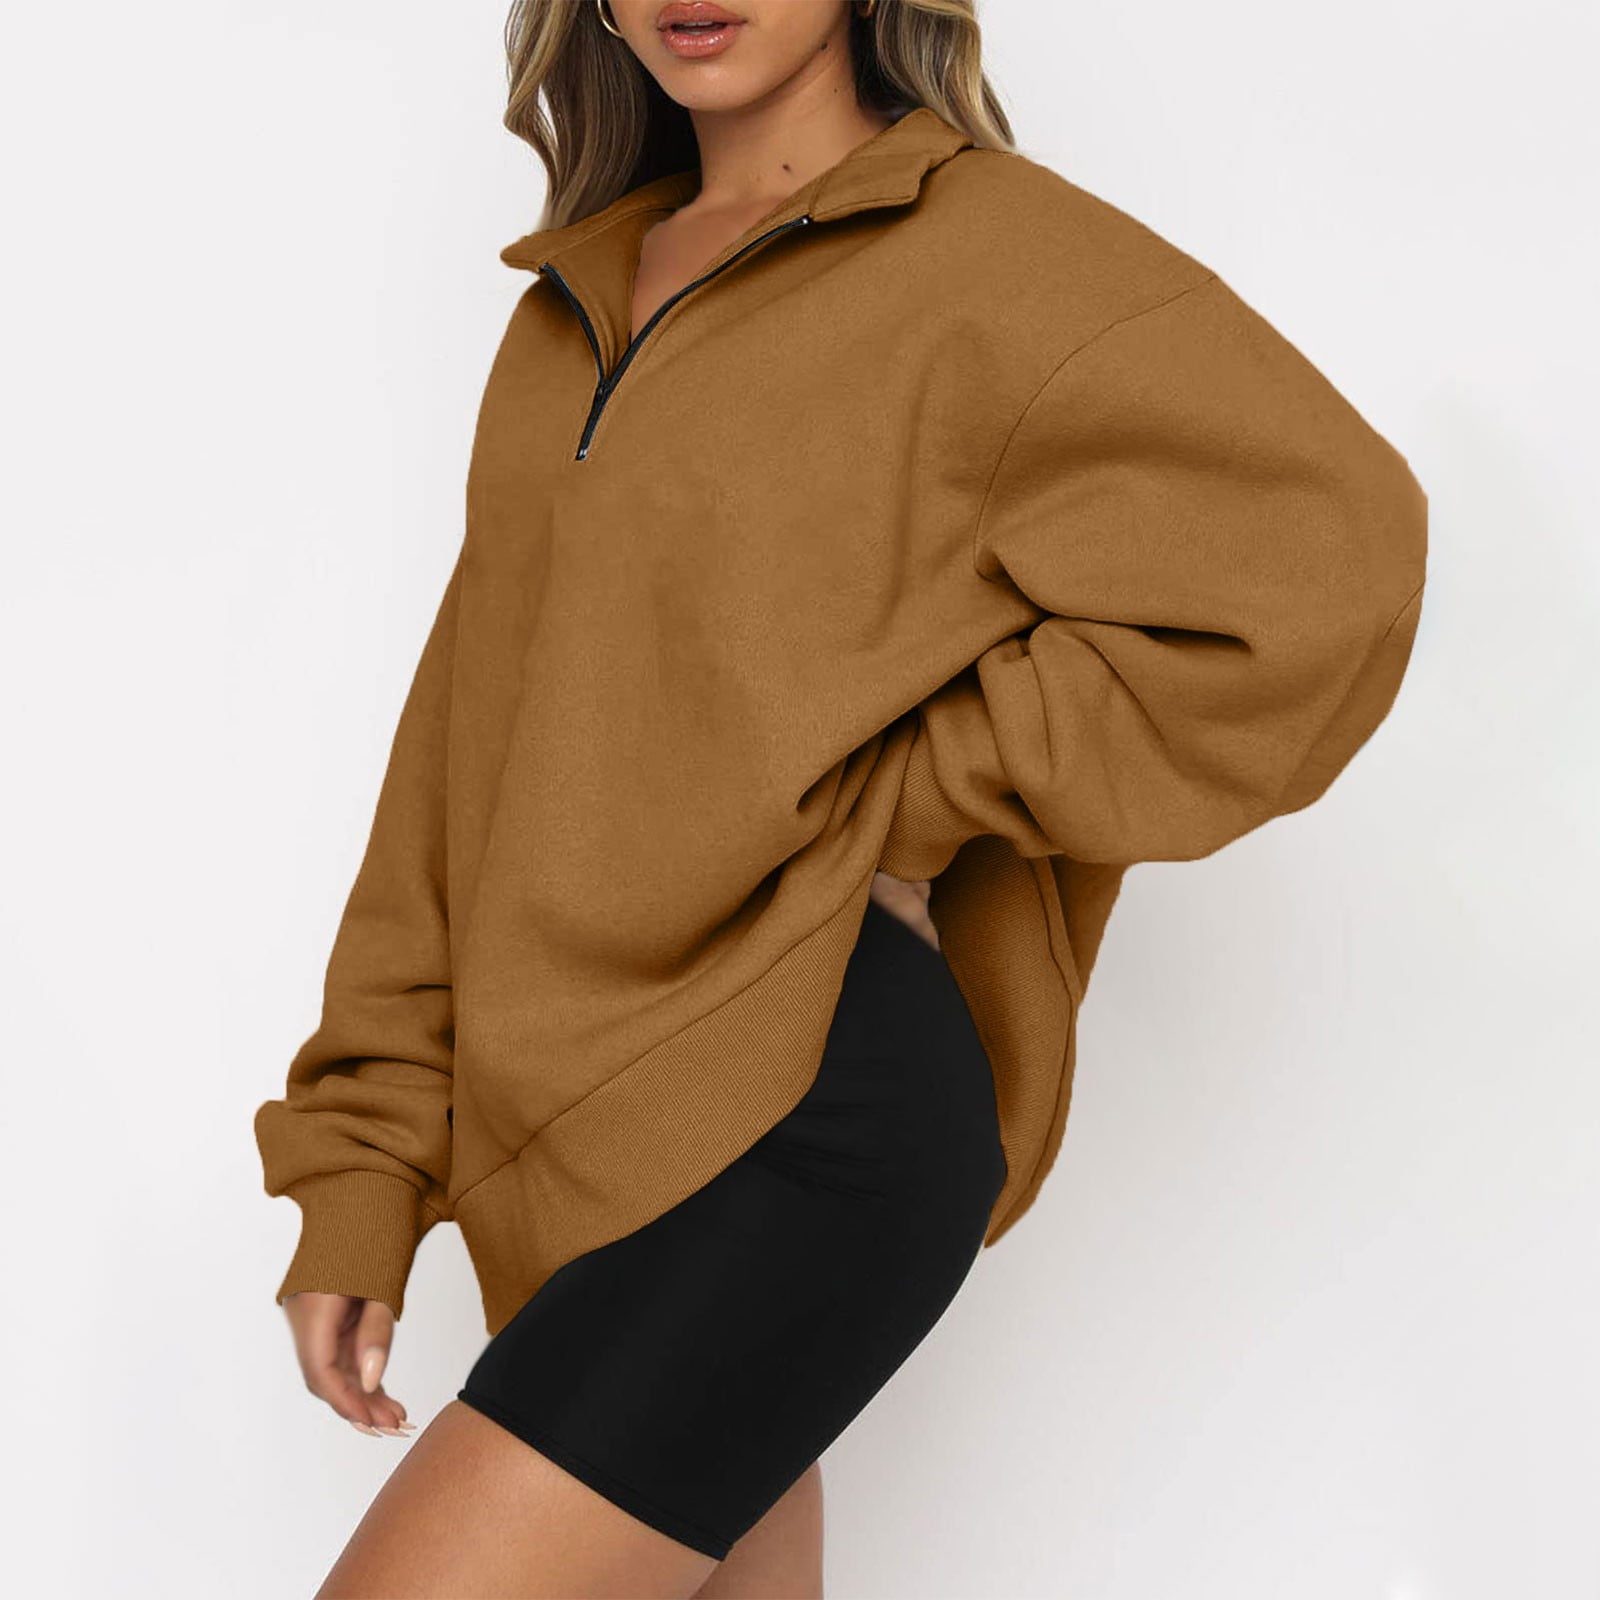 MISSACTIVER Women’s Oversized Half Zip Sweatshirt Quarter 1/4 Zipper Long Sleeve Drop Shoulder Pocket Pullover Jacket Tops